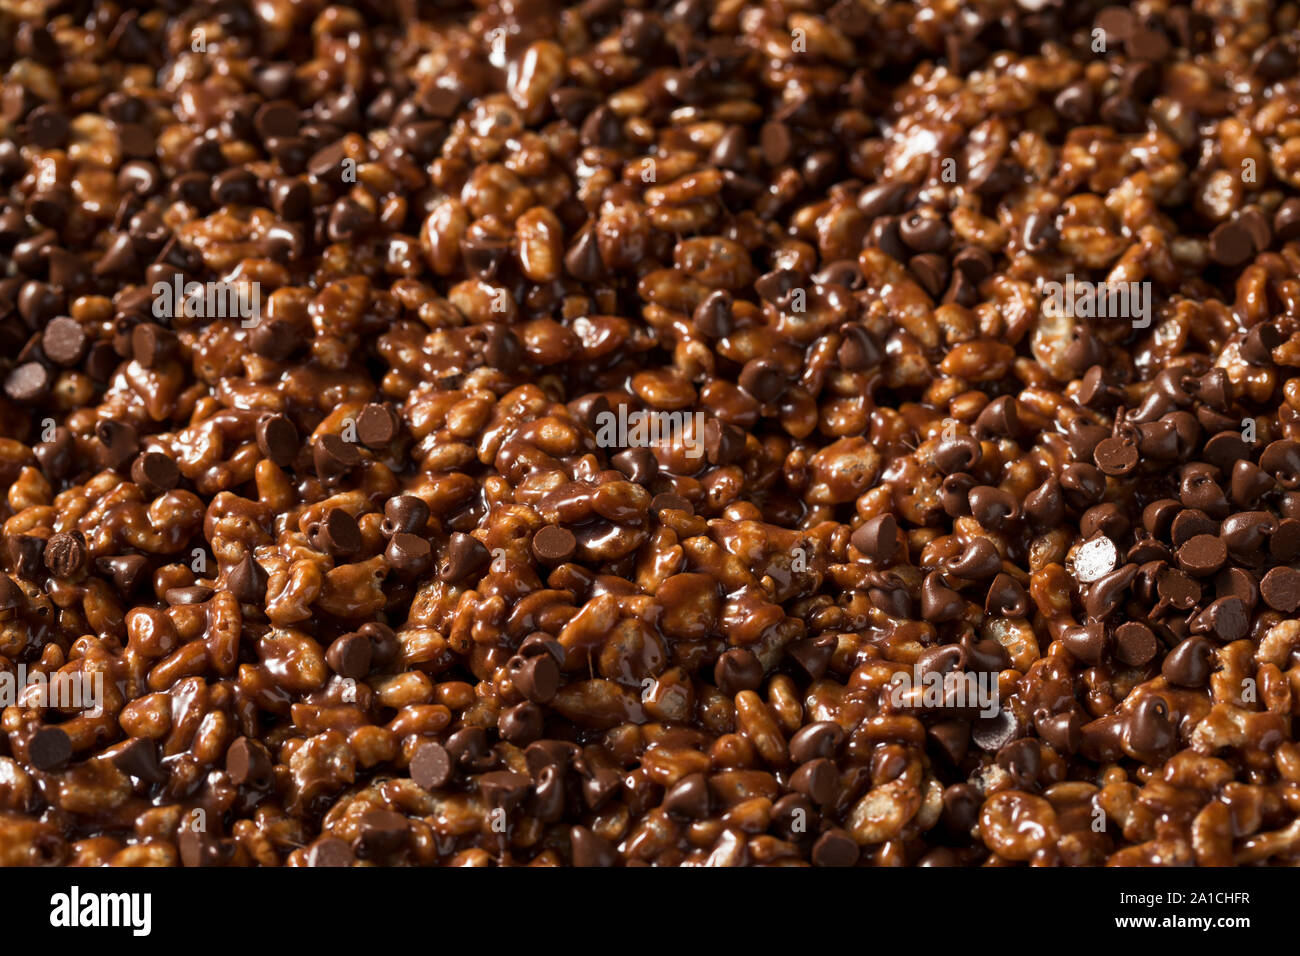 Homemade Chocolate Rice Crispy Treats with Marshmallows Stock Photo